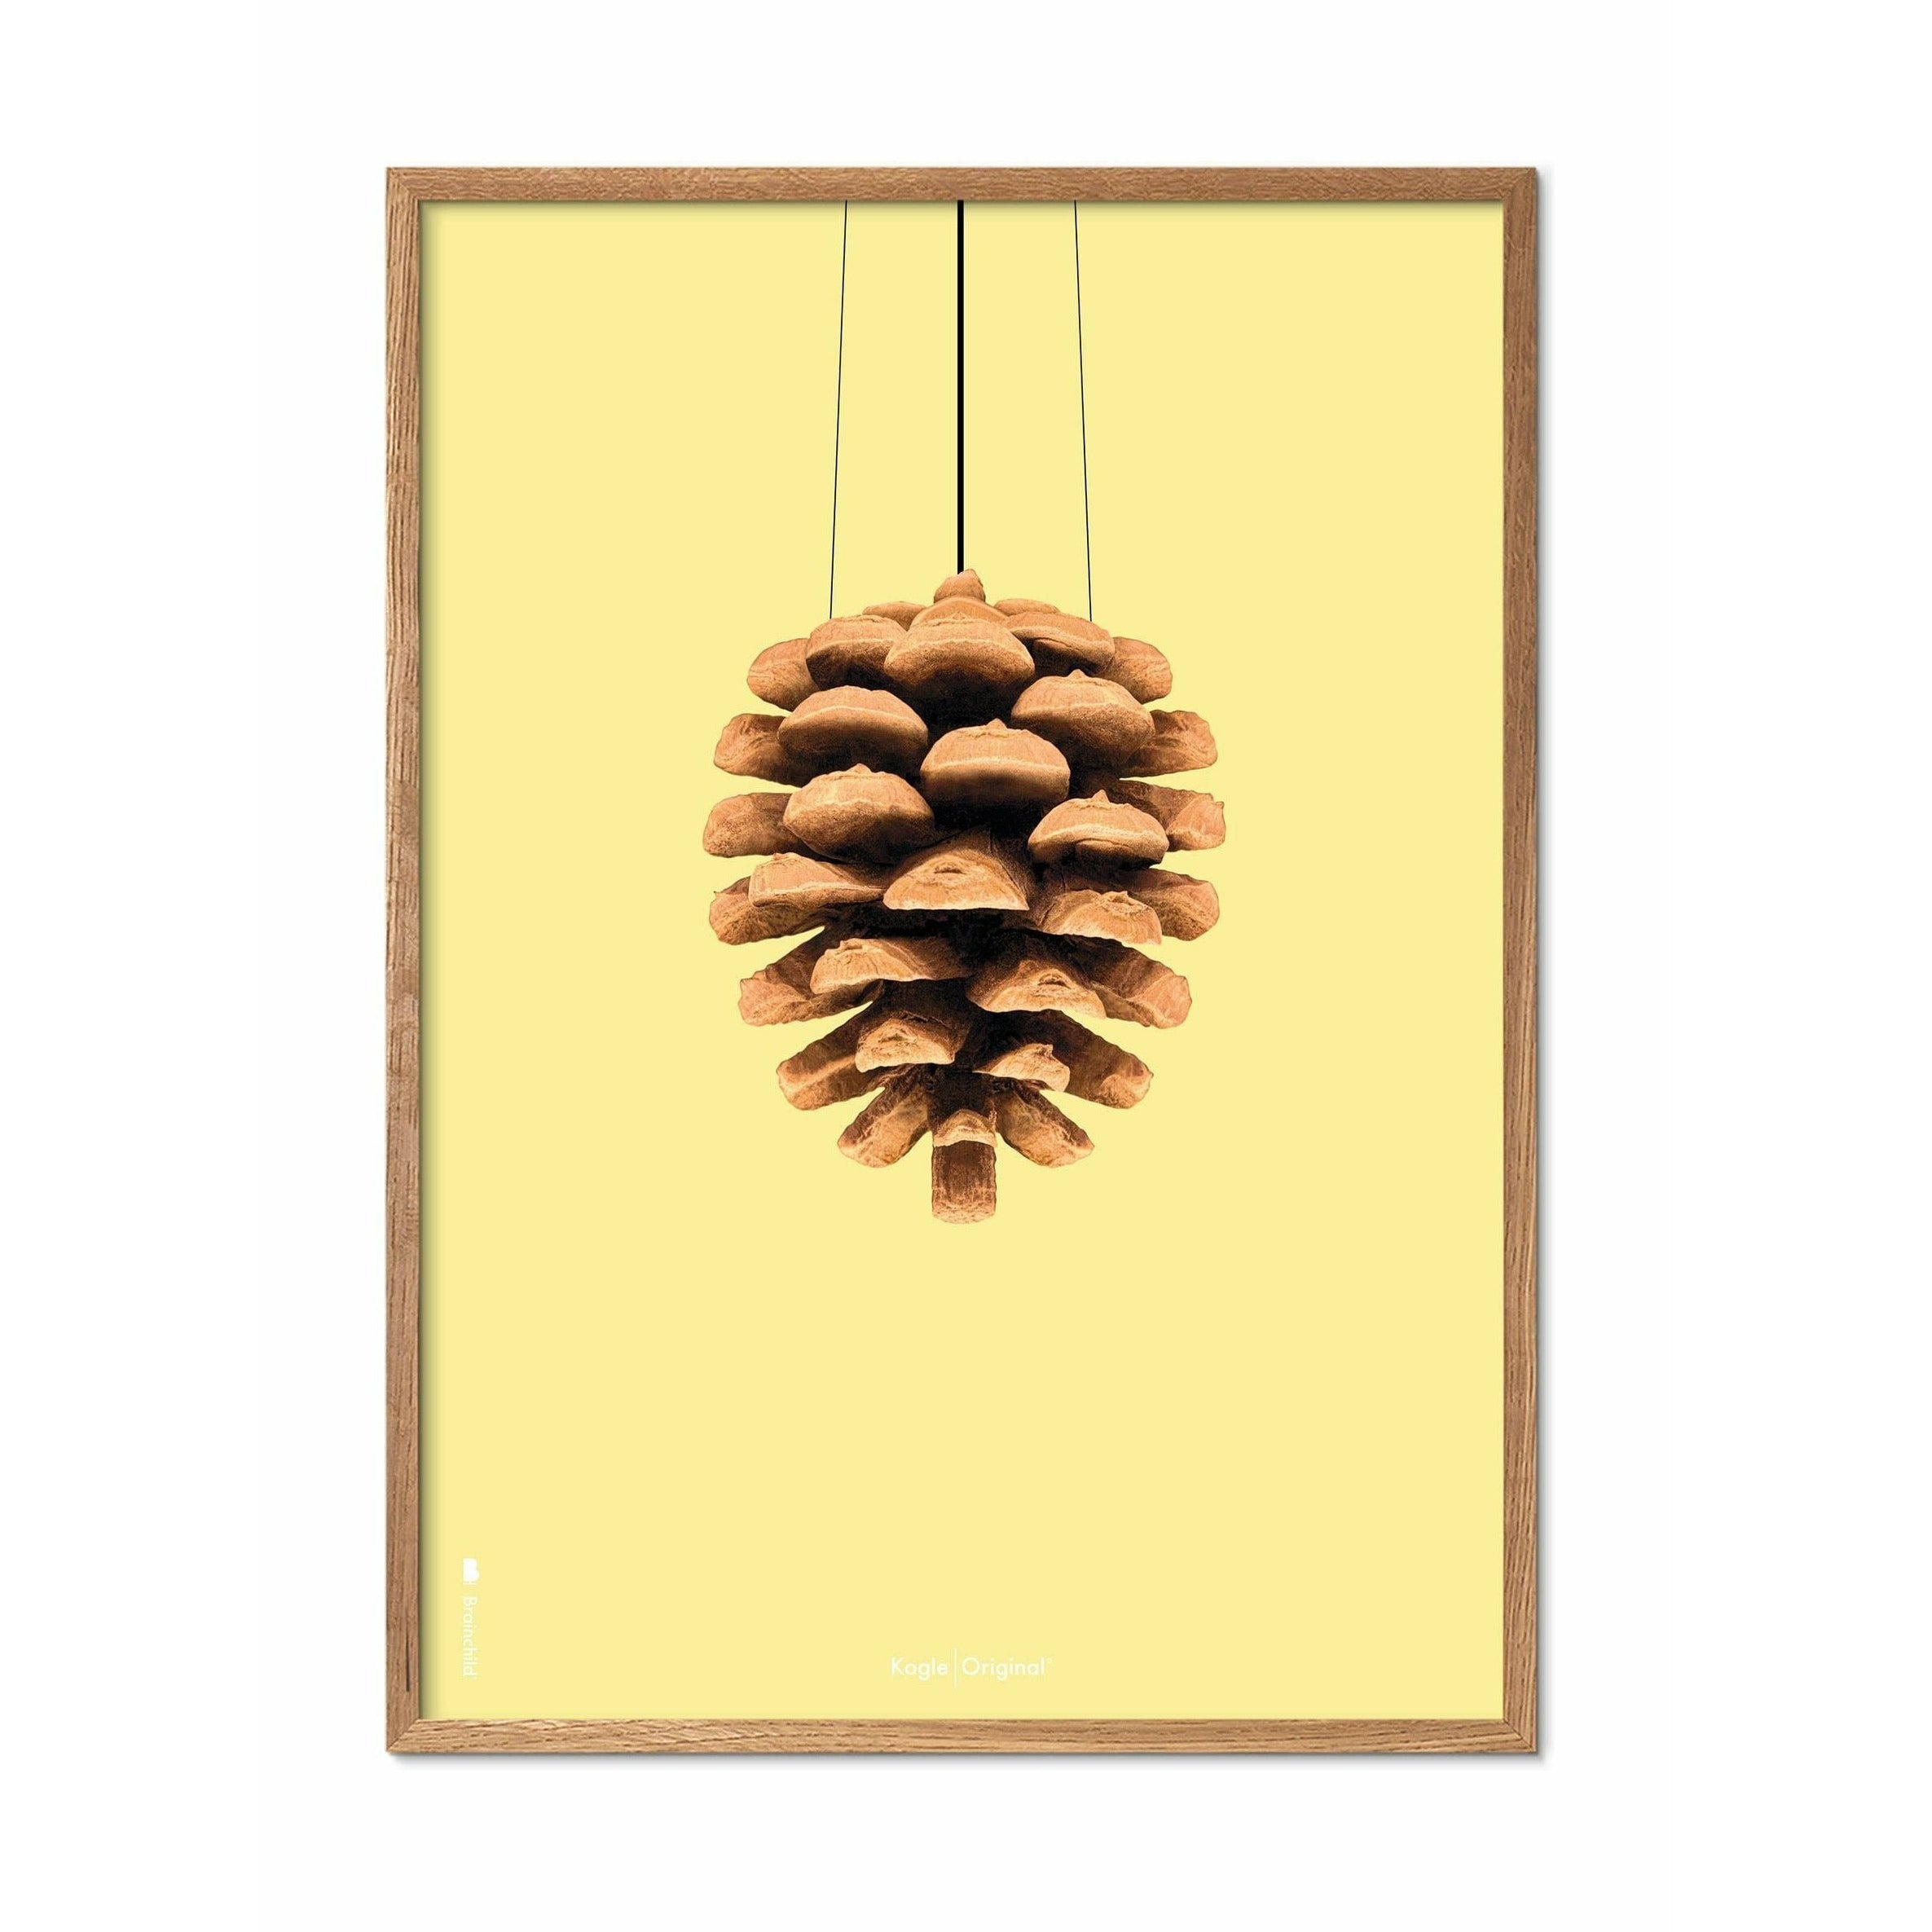 Póster clásico de cono de pino de creación, marco hecho de madera clara de 70x100 cm, fondo amarillo